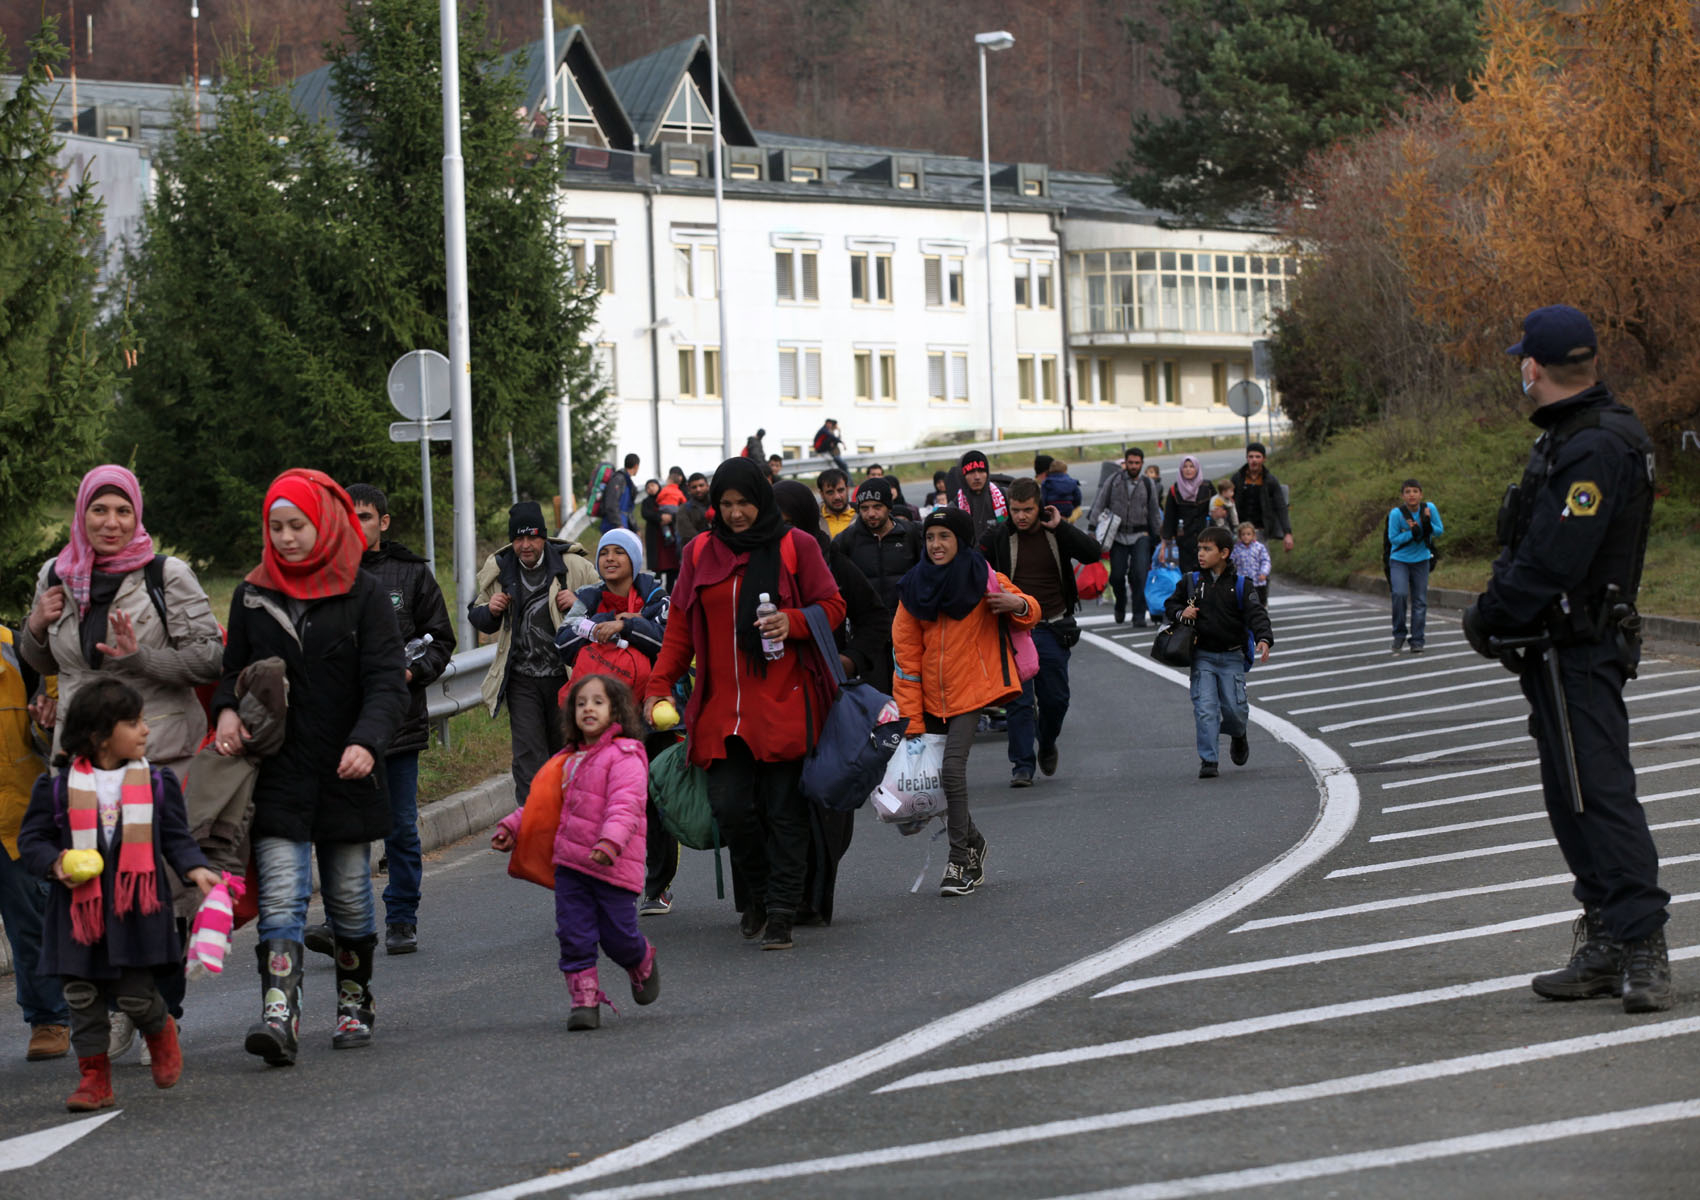 Réfugiés escortés par la police slovène à la frontière entre la Slovénie et la Hongrie, novembre 2015. @ iStockphoto.com/vichinterlang